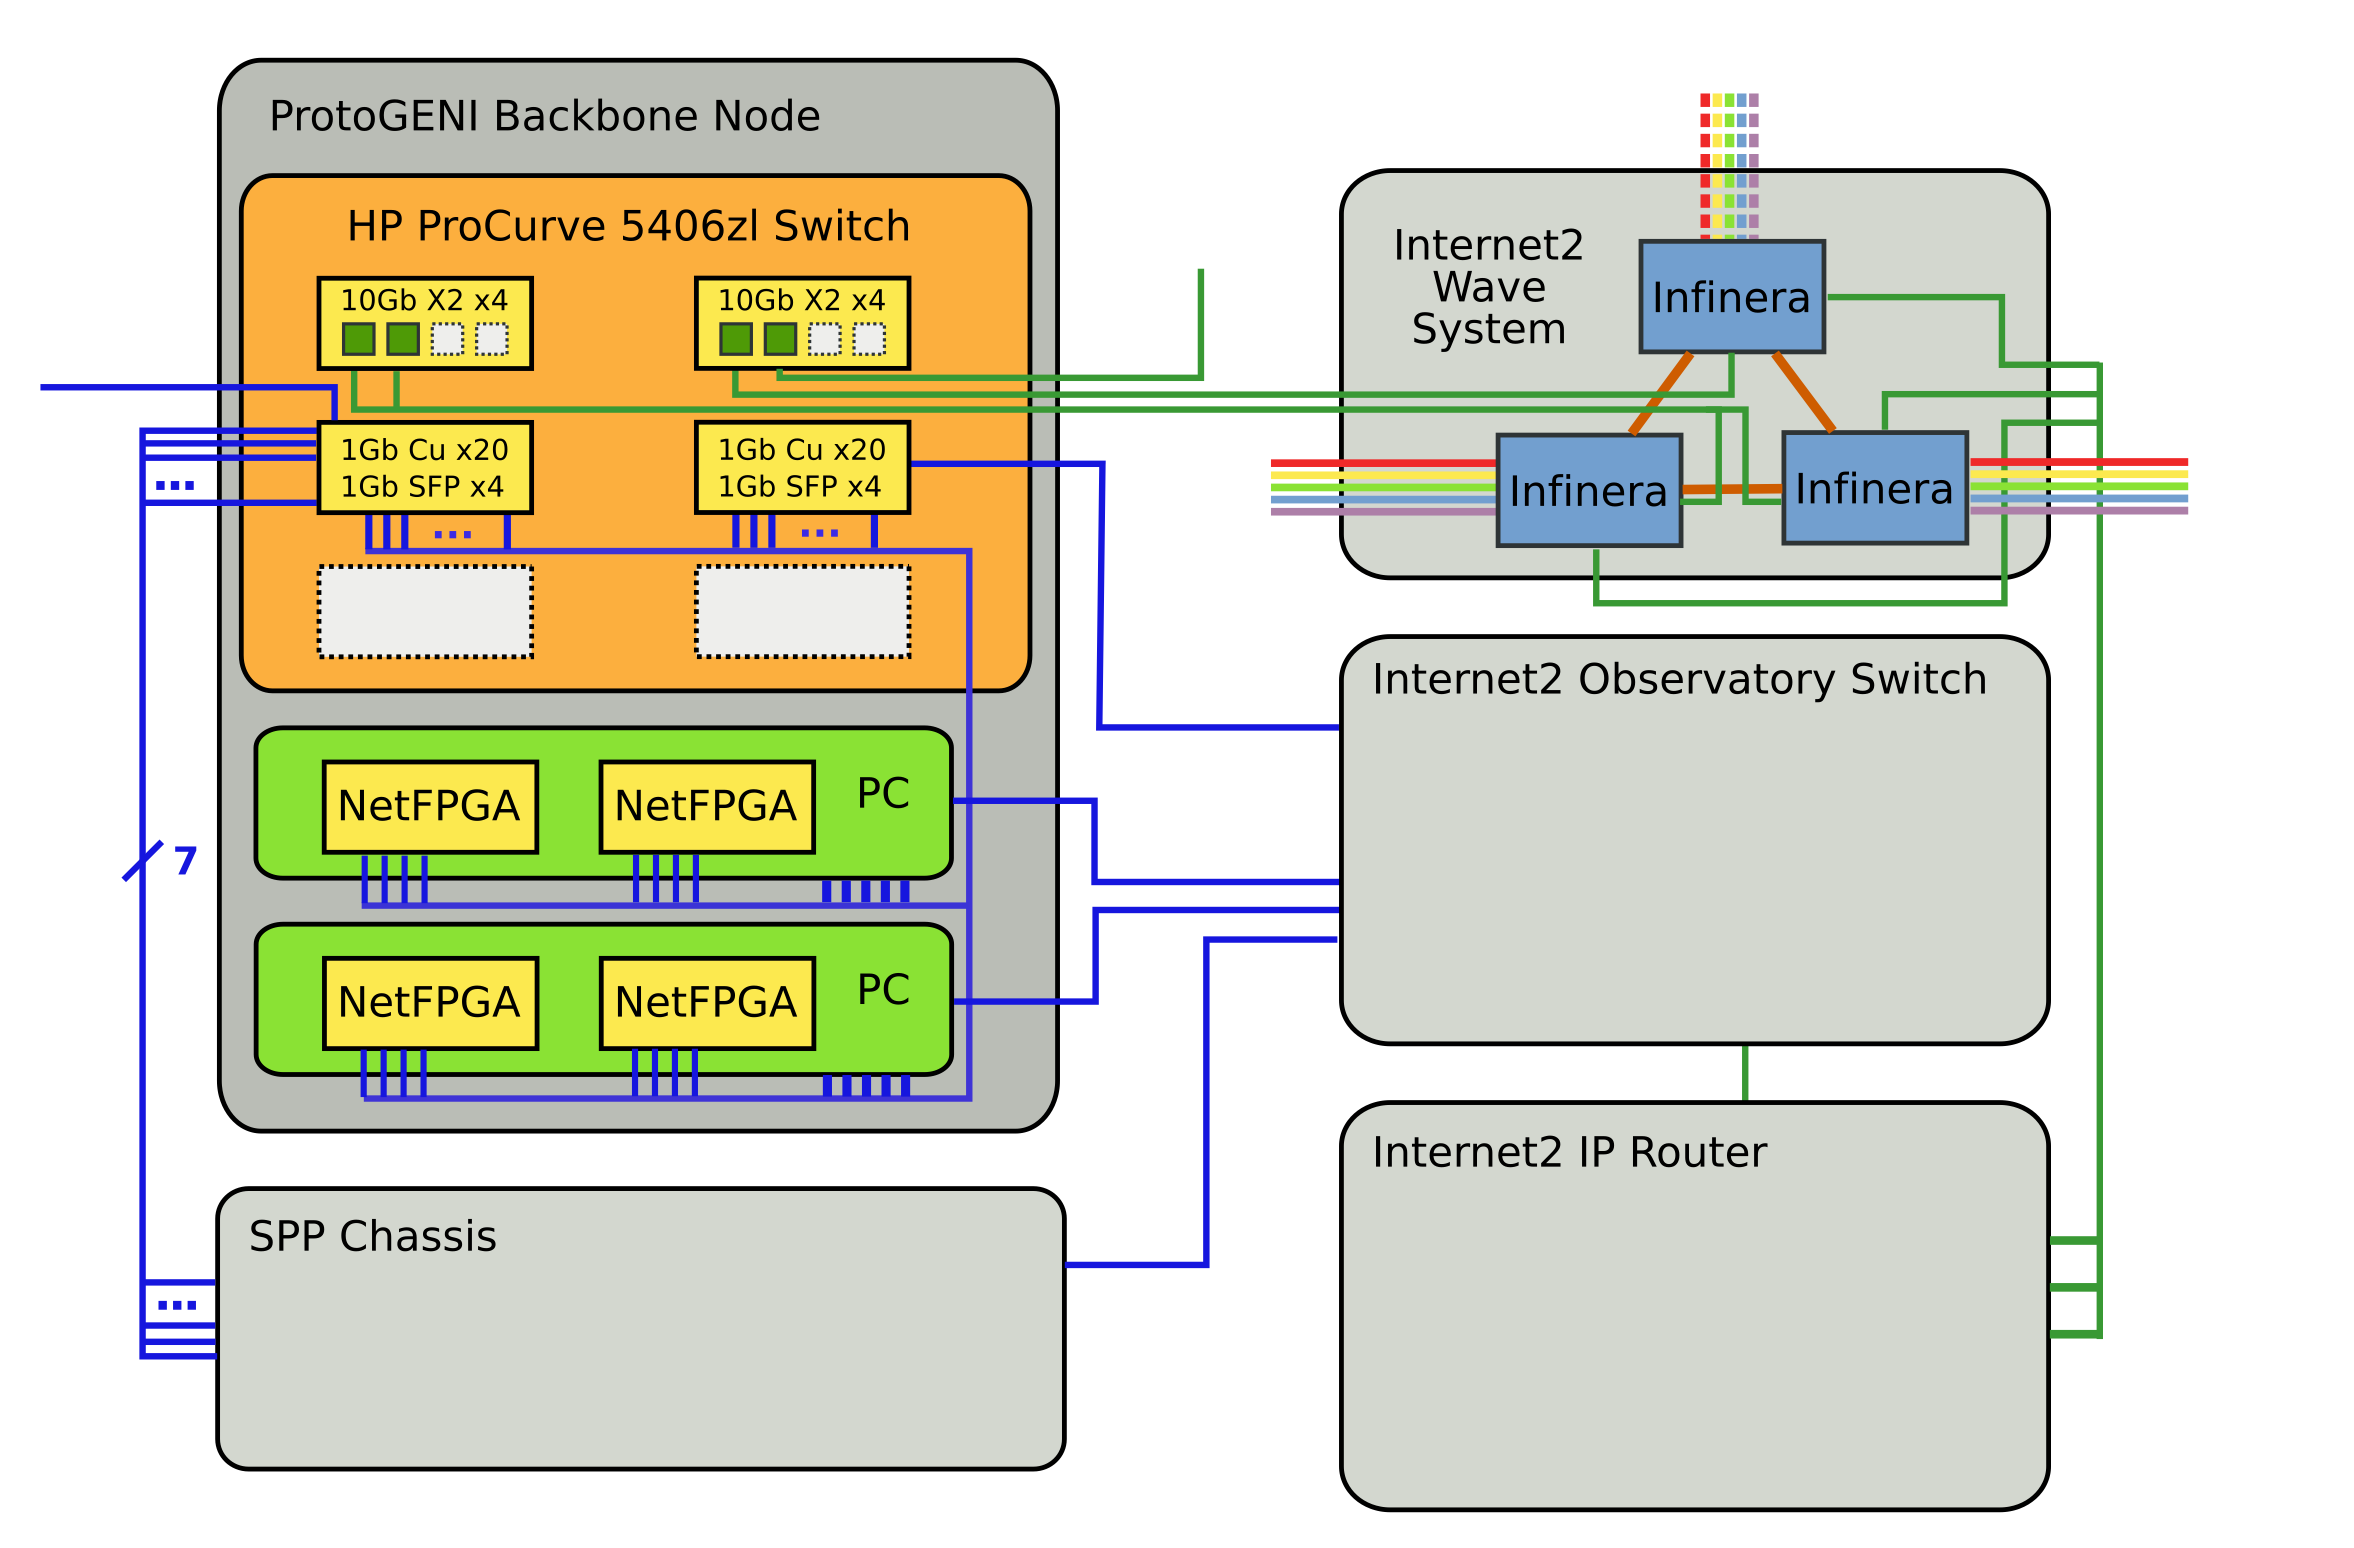 Backbone ProtoGENI node (courtesy of ProtoGENI backbone node wiki)